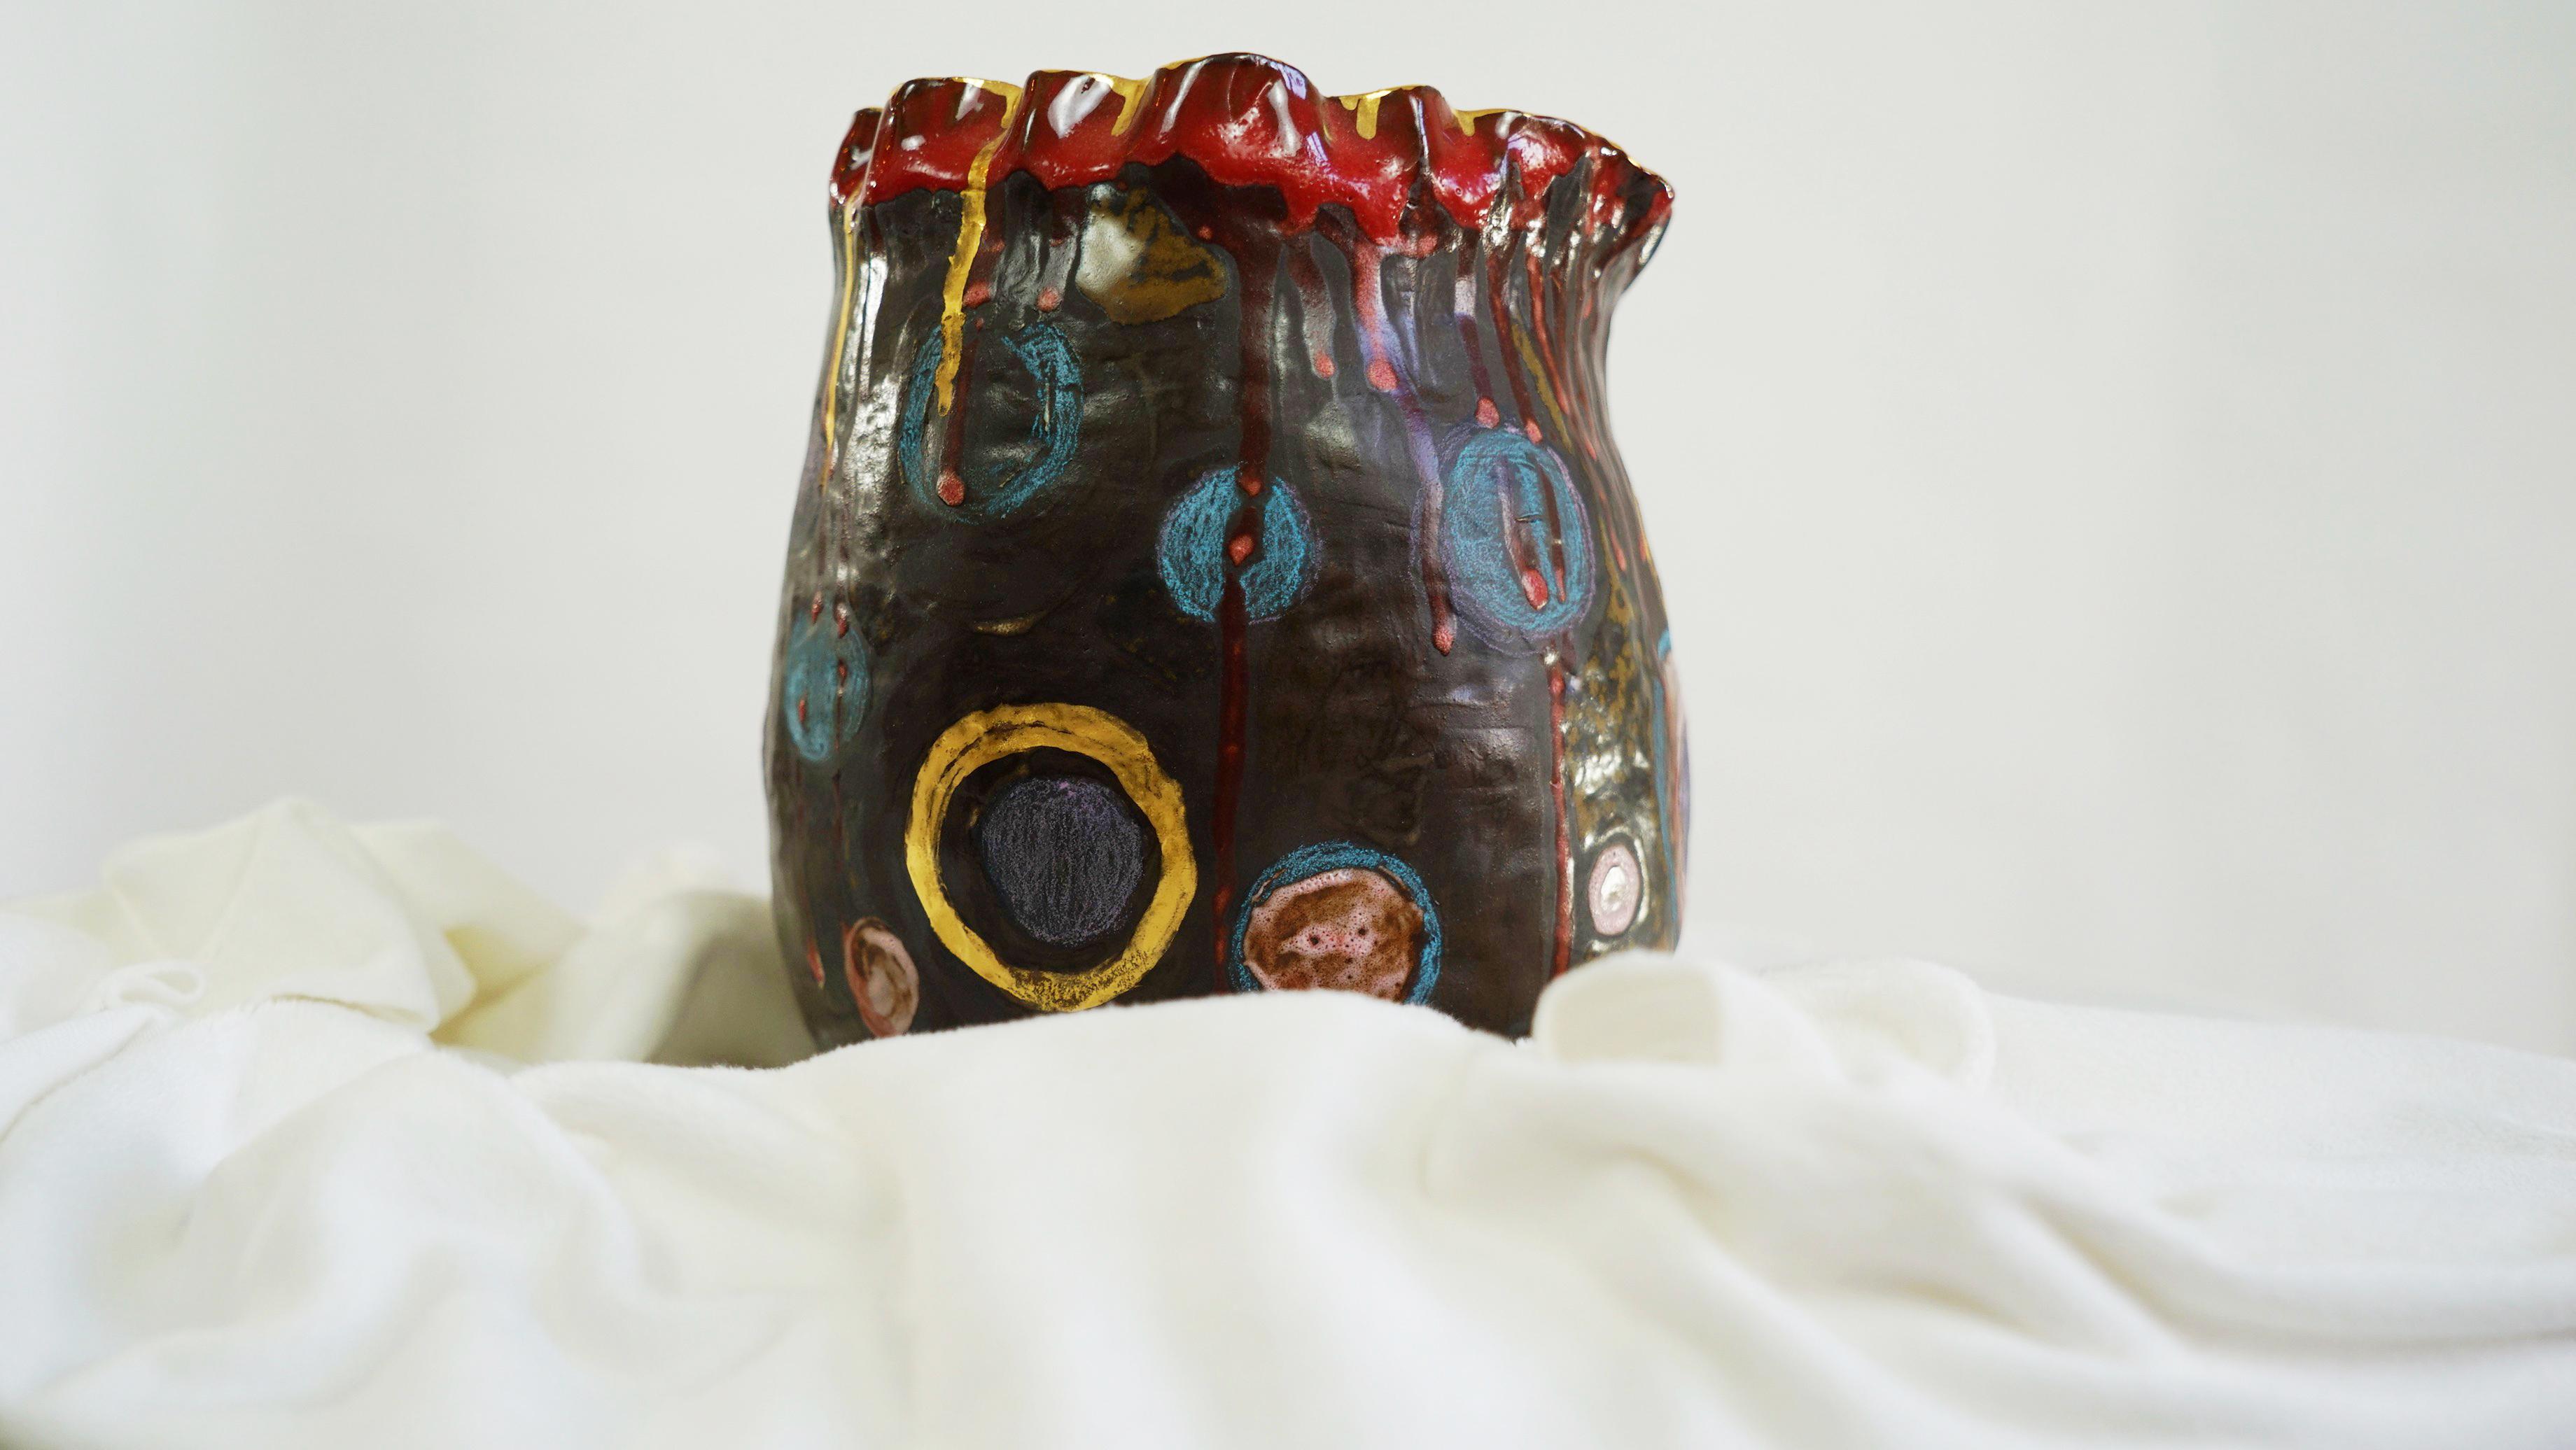 Nummerierte Vase Olé aus der Kollektion Olé, eine Hommage an die Flamenco-Kultur.
Von Hand gefertigt und glasiert, ist dies ein einzigartiges Stück. 
MATERIALIEN: Schwarzes Keramik-Steinzeug, Glasur, Goldglanz.
Farbe: braun, rot, blau, gold
Die